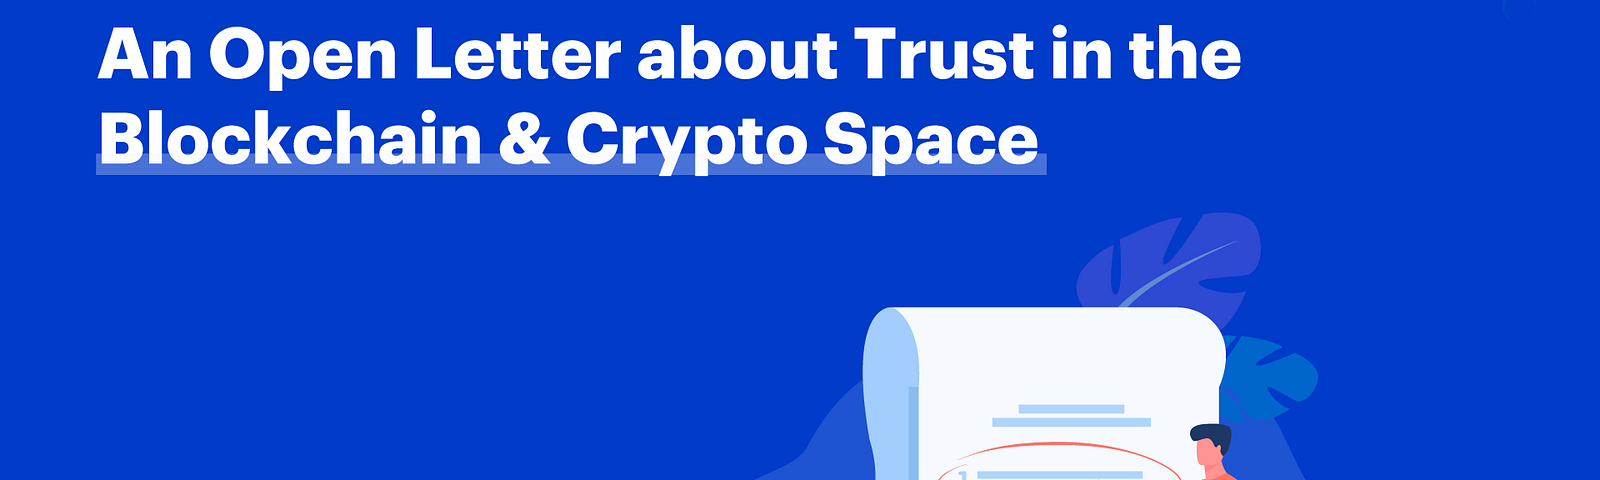 trust-in-blockchain-space-coreto